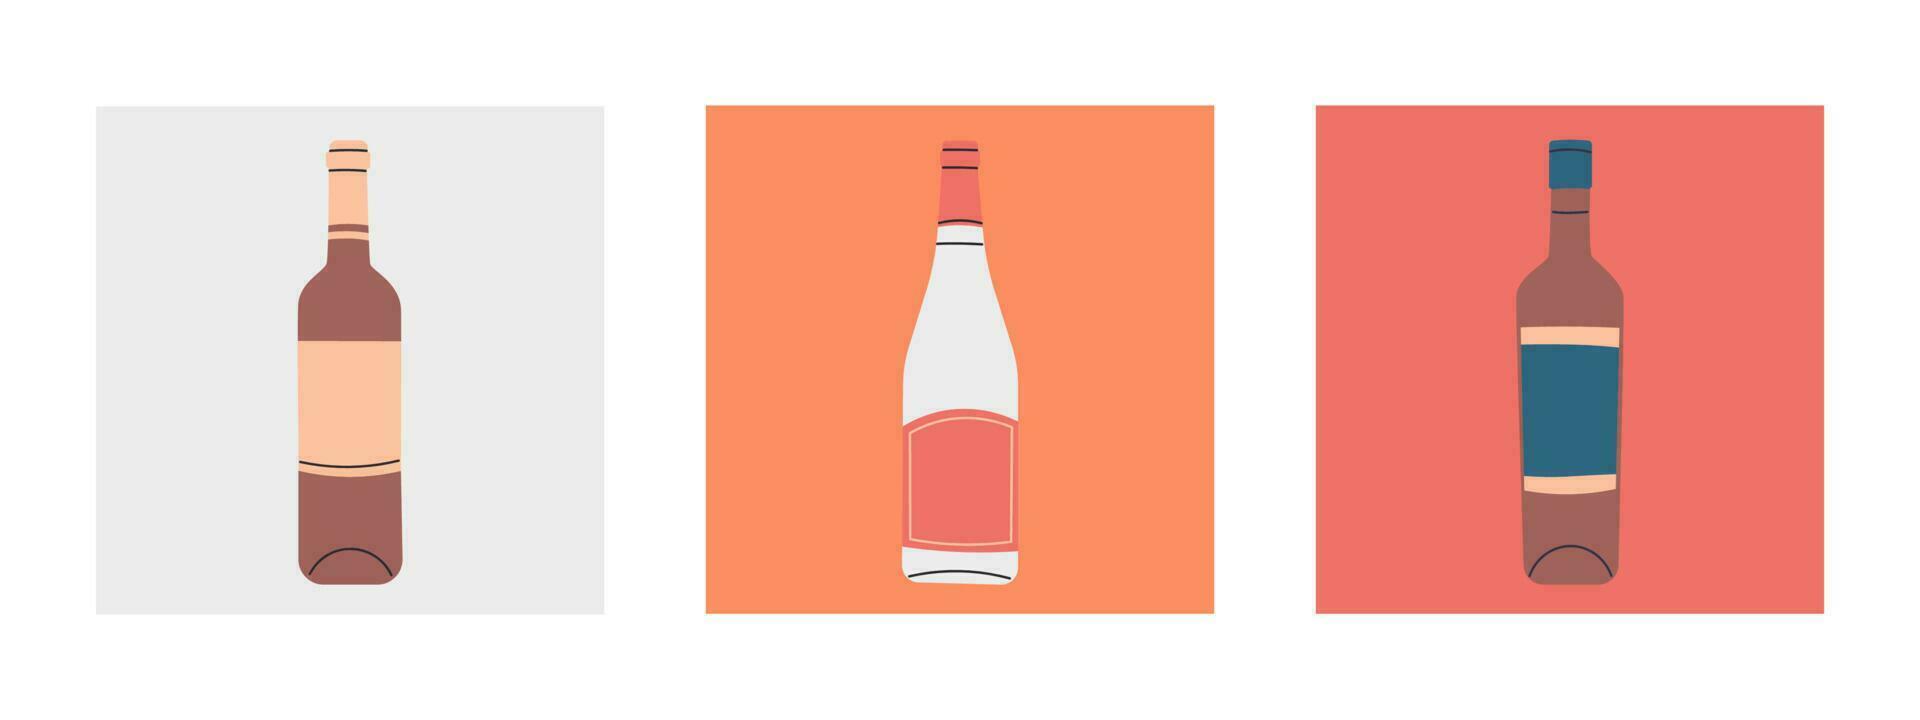 conjunto de vector plano botellas de vino. etiquetas sin inscripciones. ilustración para bar o restaurante menú diseño.